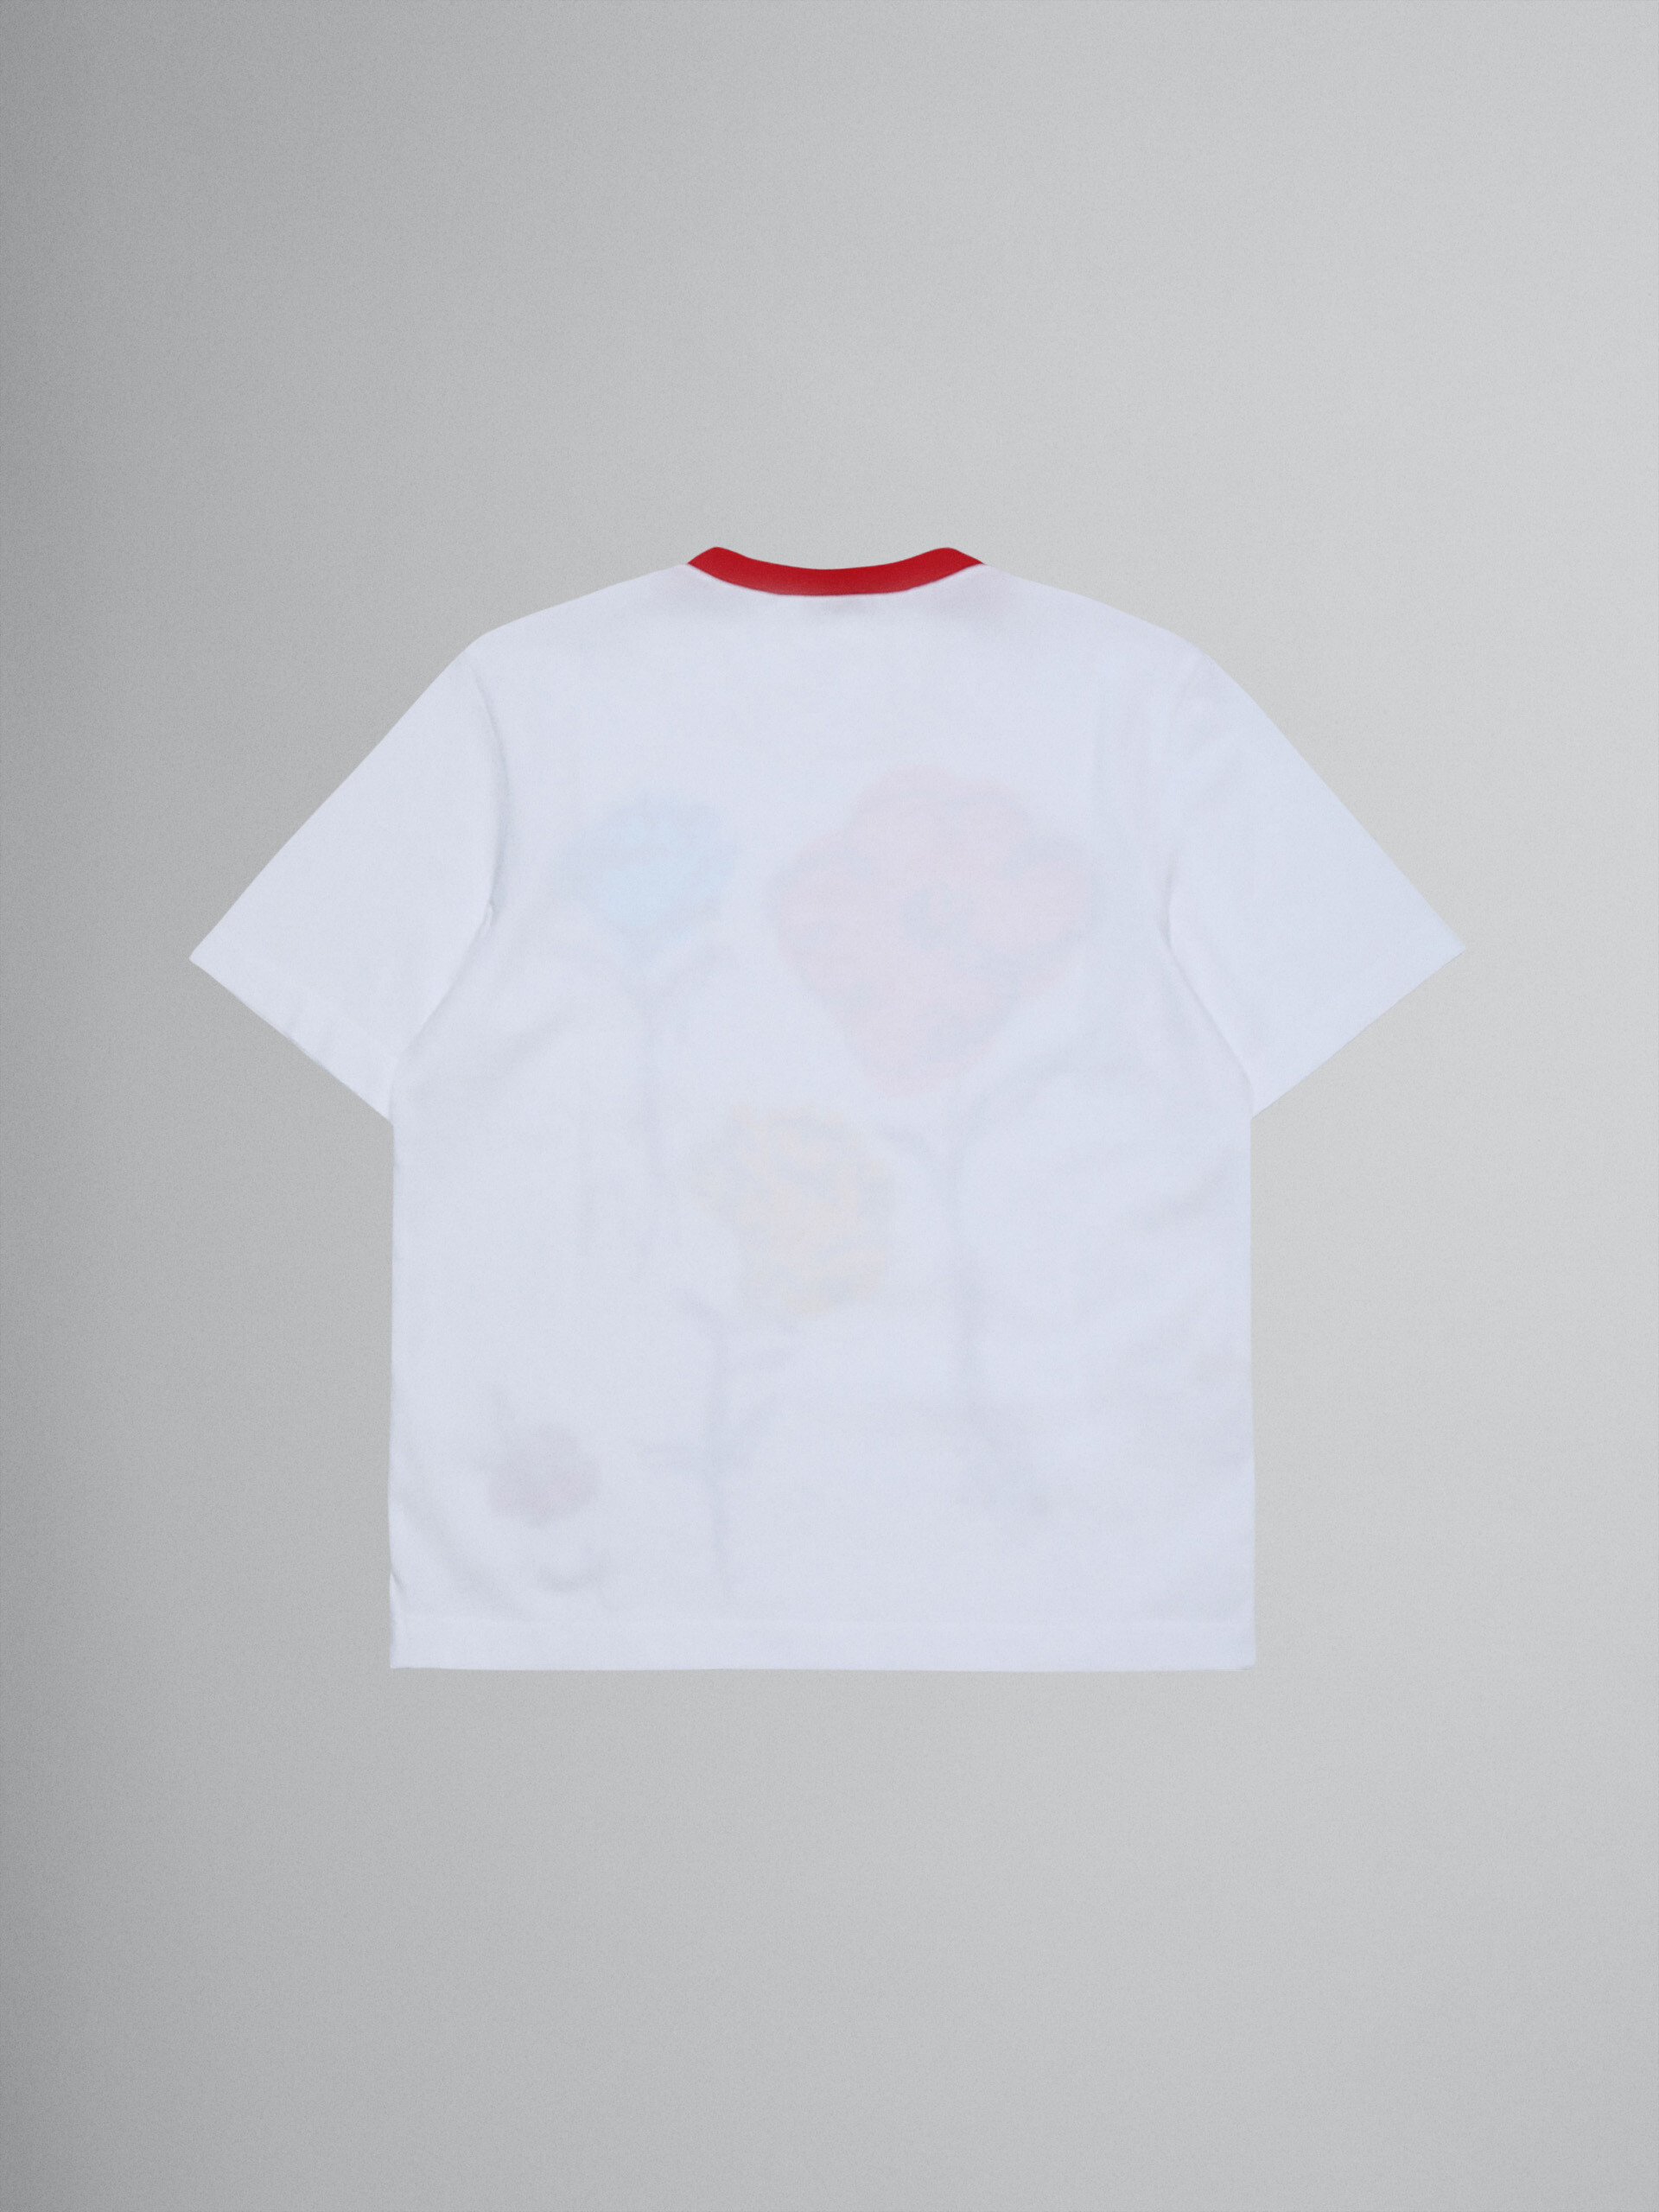 Camiseta floral de jersey de algodón - Camisetas - Image 2